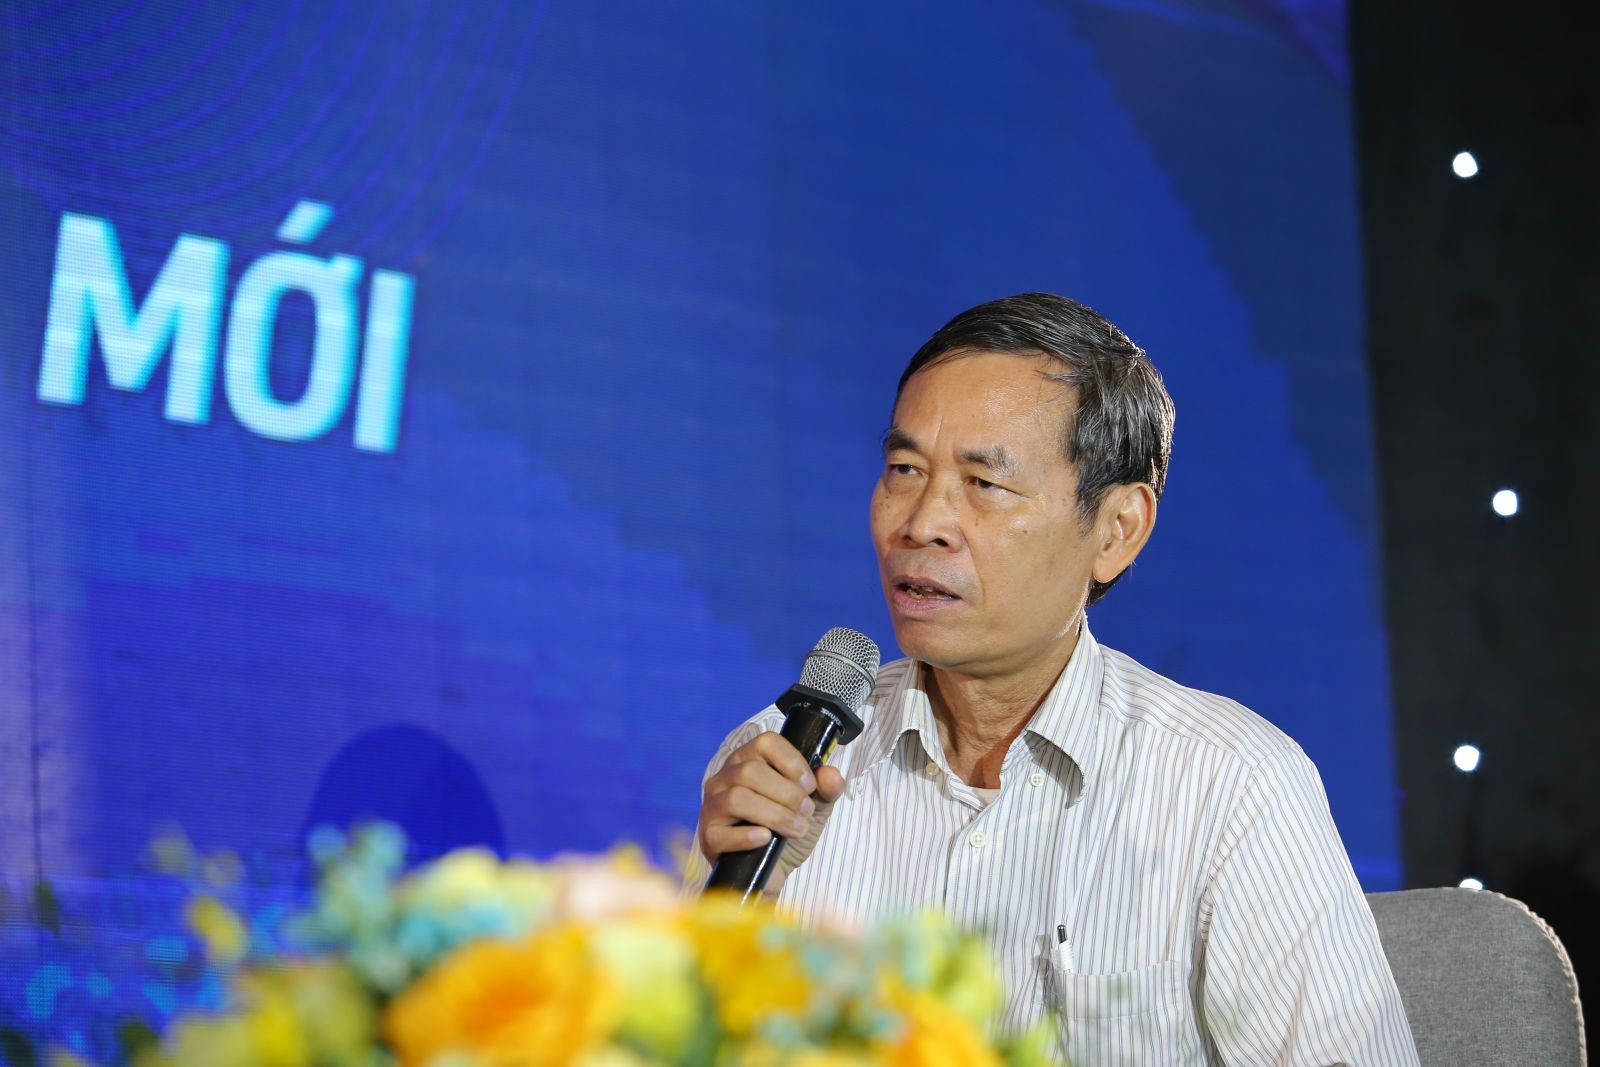 
Ông Bùi Văn Doanh, Viện trưởng Viện Nghiên cứu Bất động sản Việt Nam
